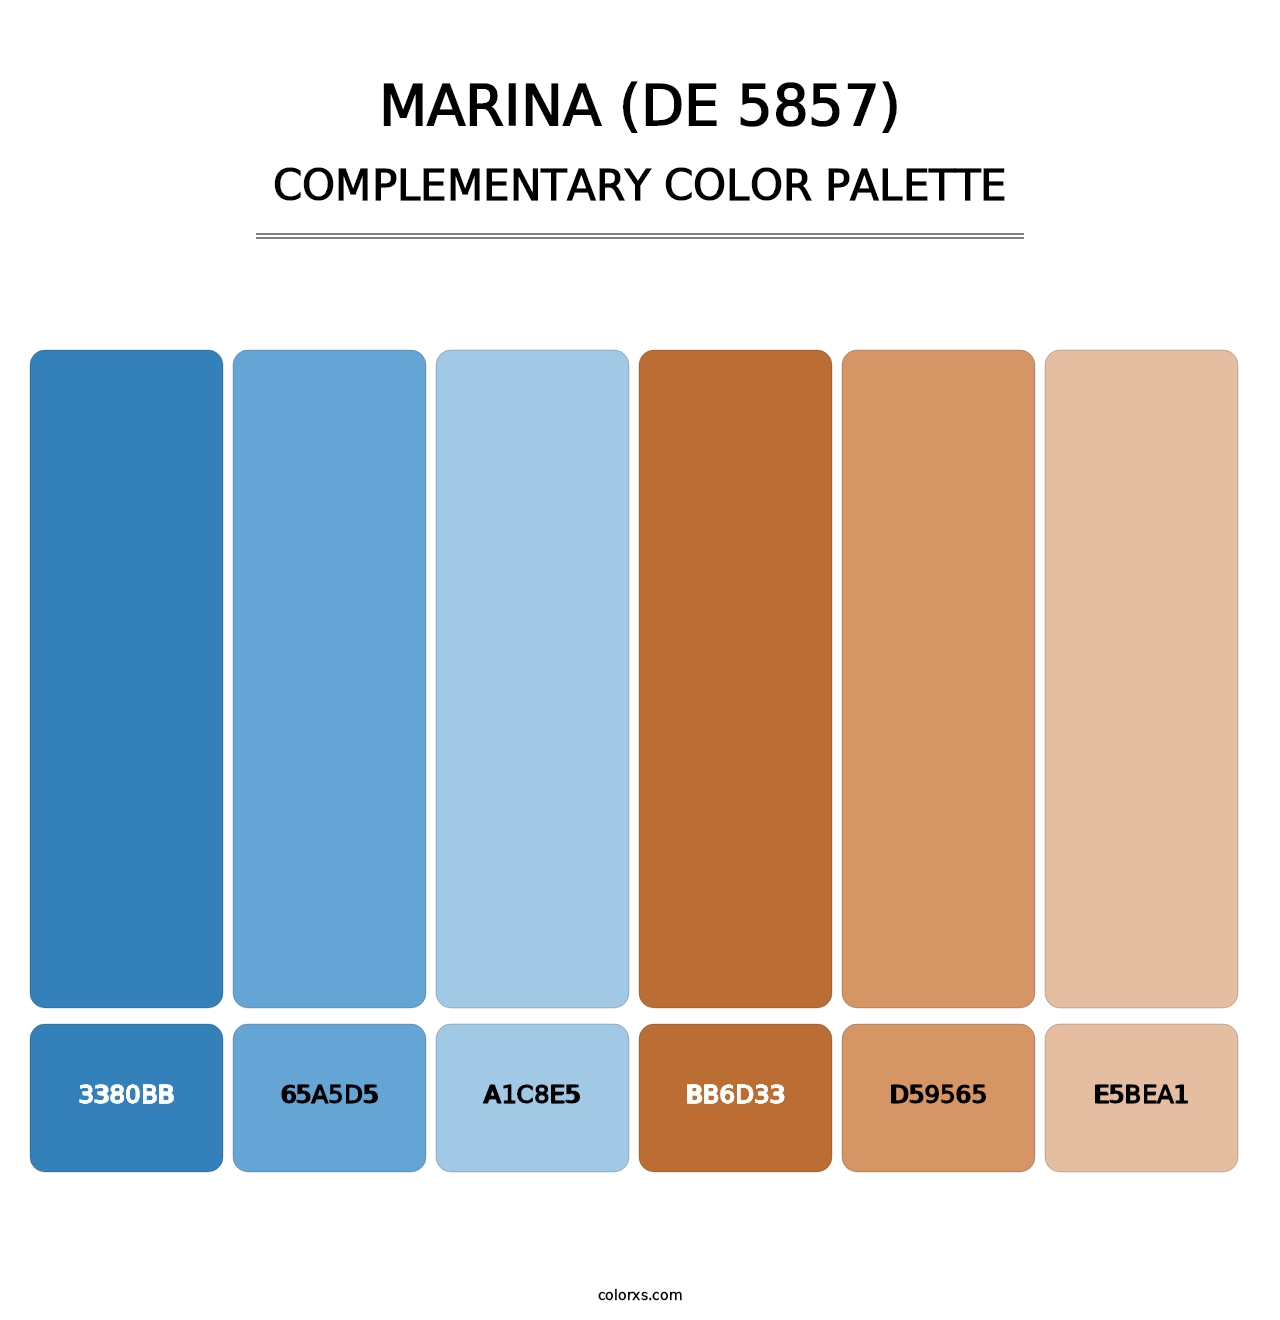 Marina (DE 5857) - Complementary Color Palette